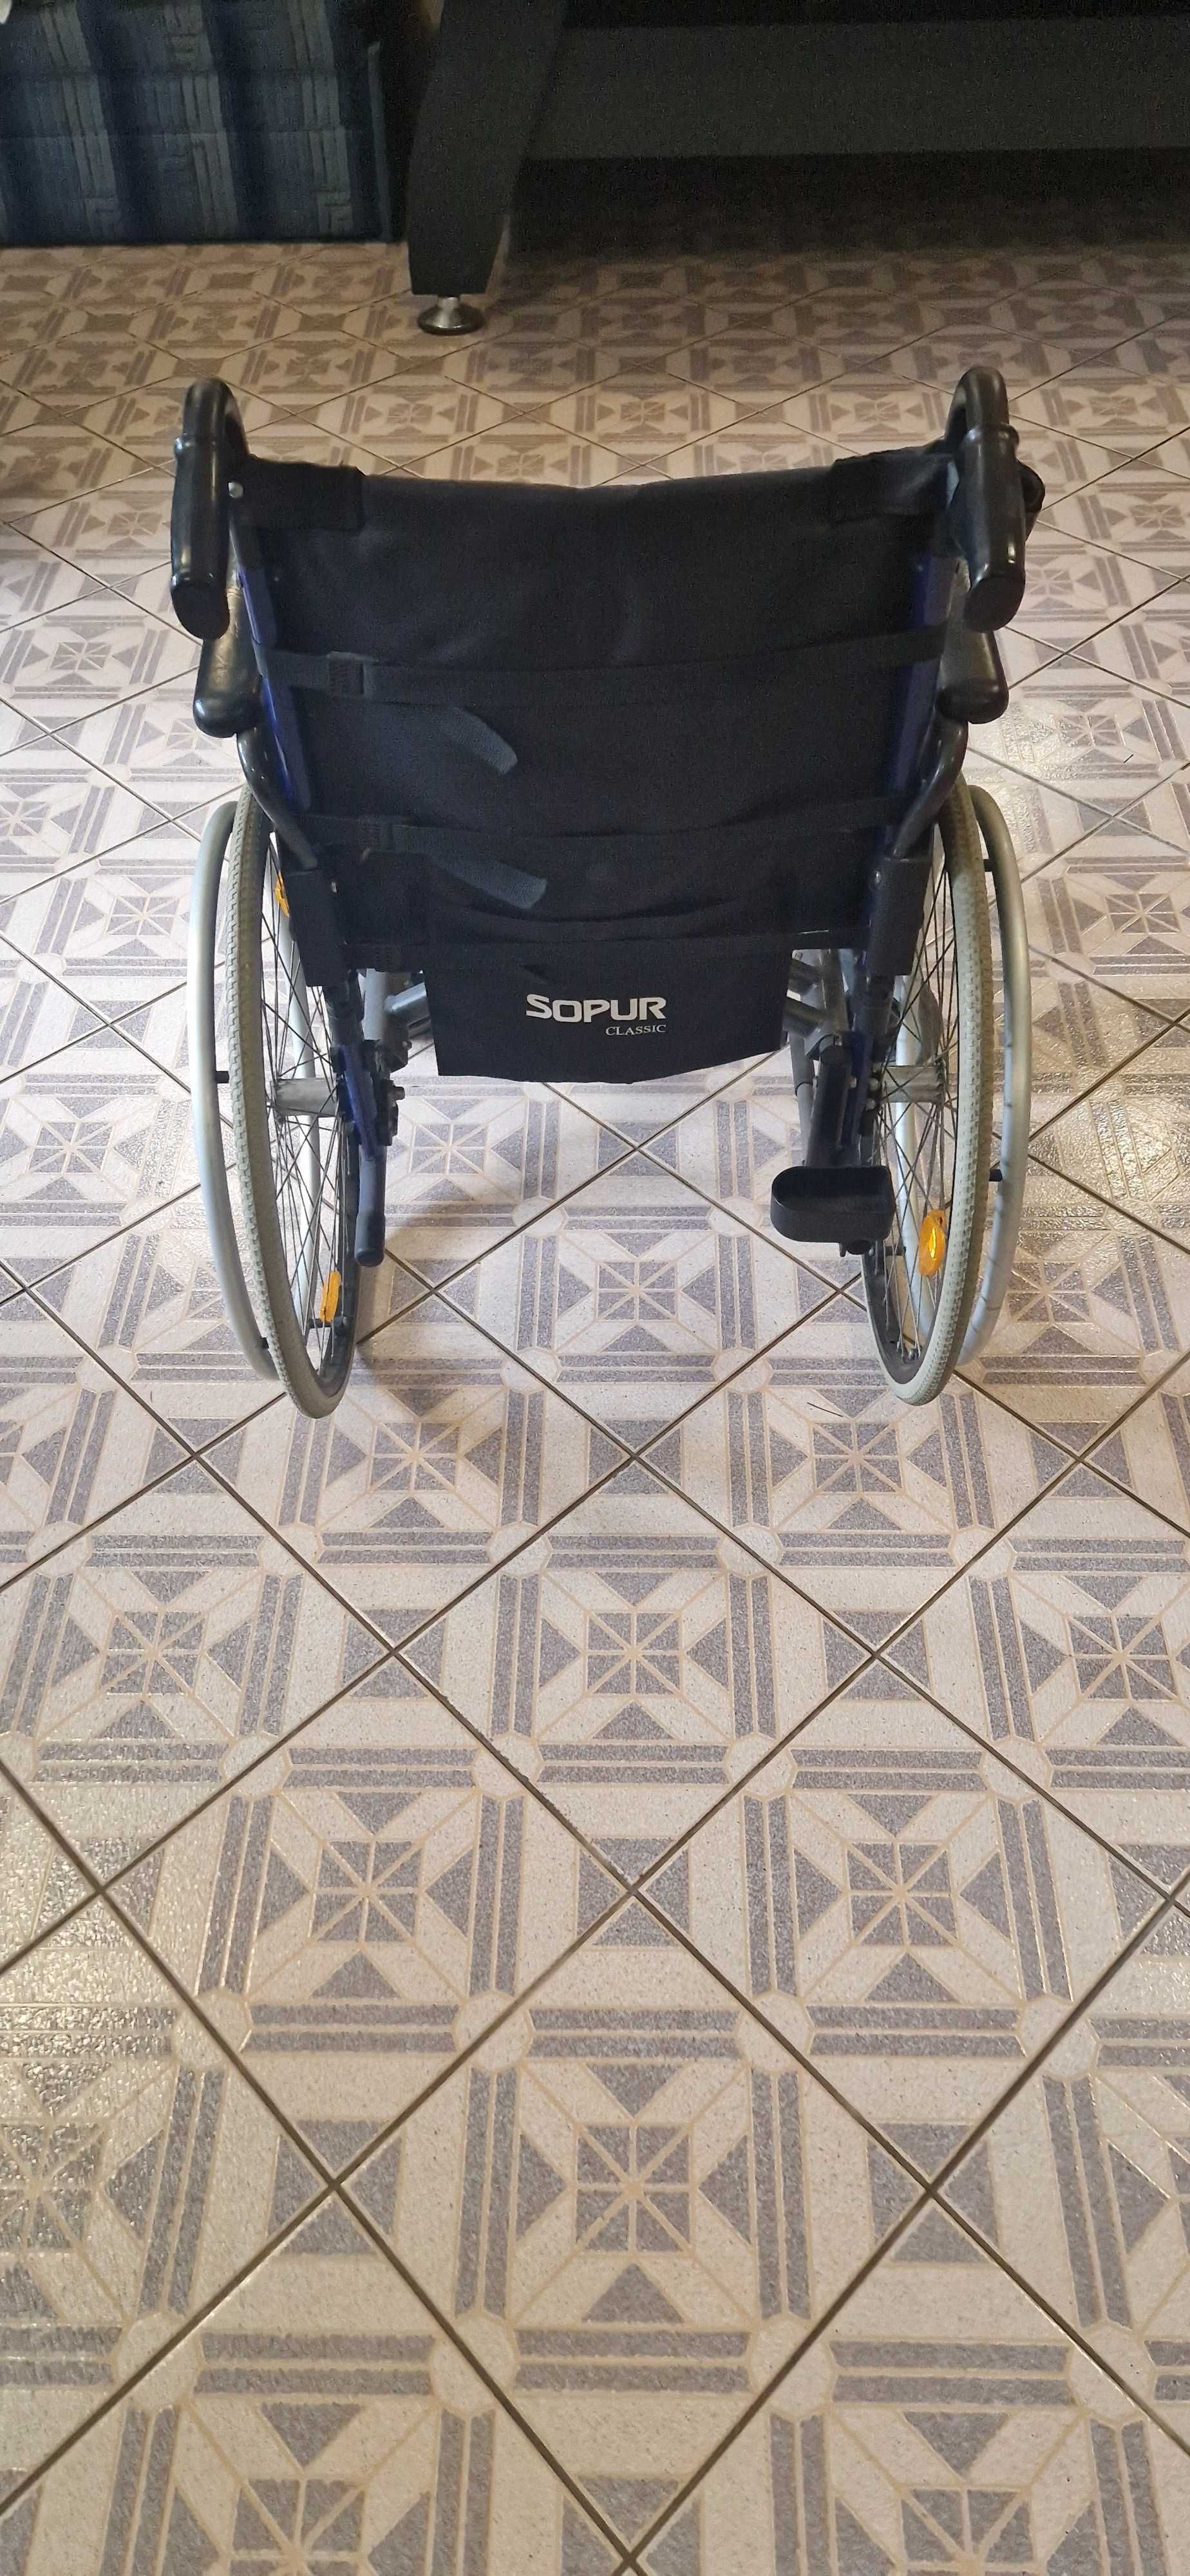 Wózek dla niepełnosprawnych inwalidzki